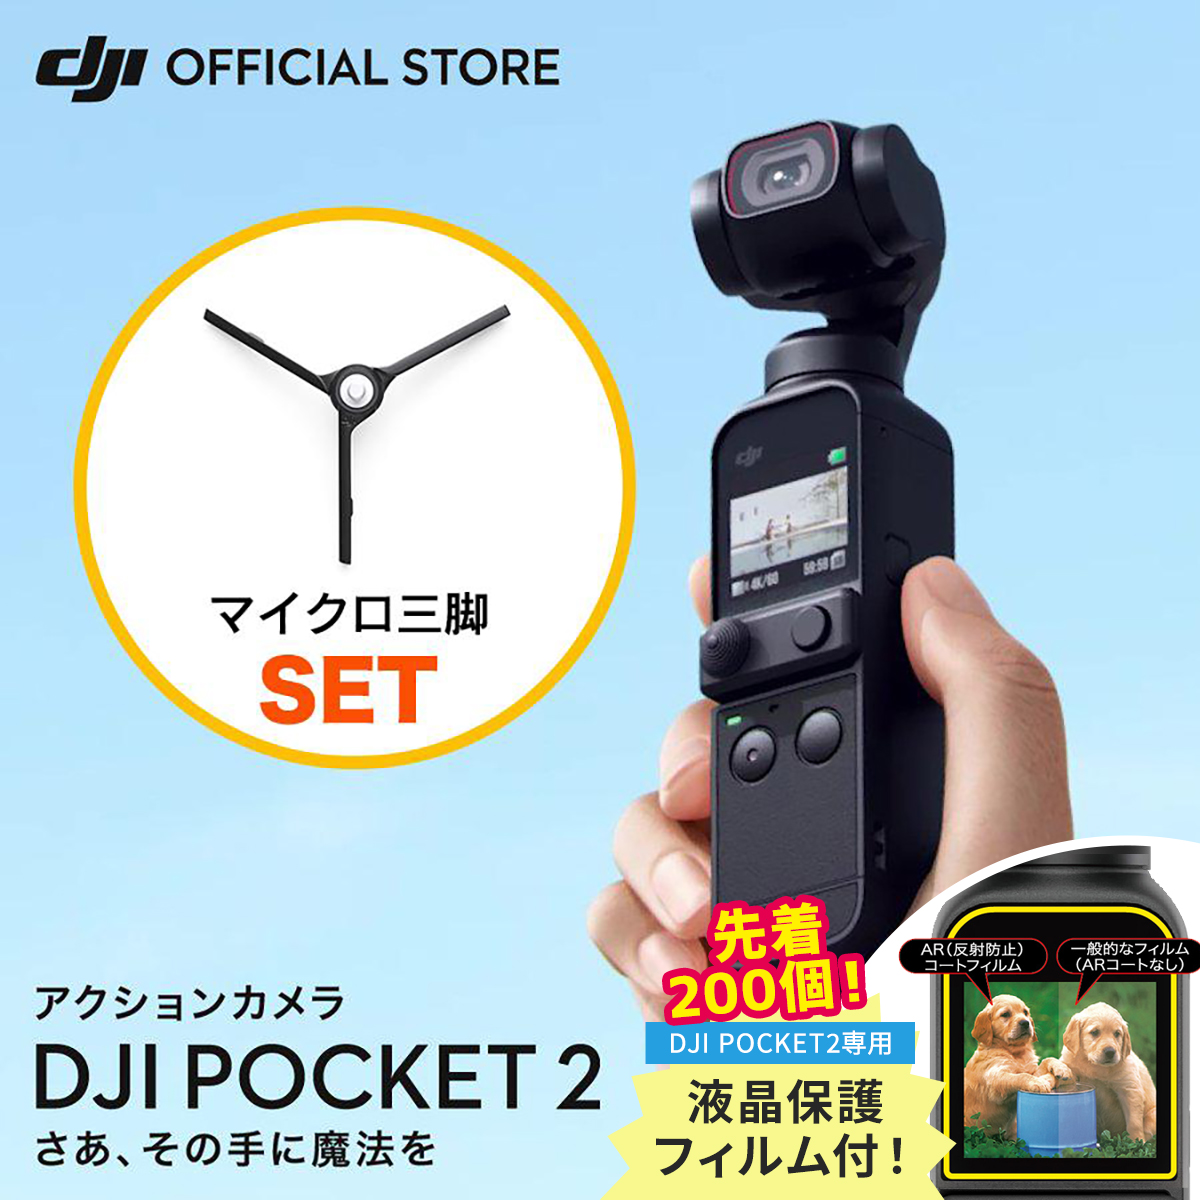 あつくに様専用 DJI Pocket 2 + SanDisk Extreme 1 高品質の人気 homma